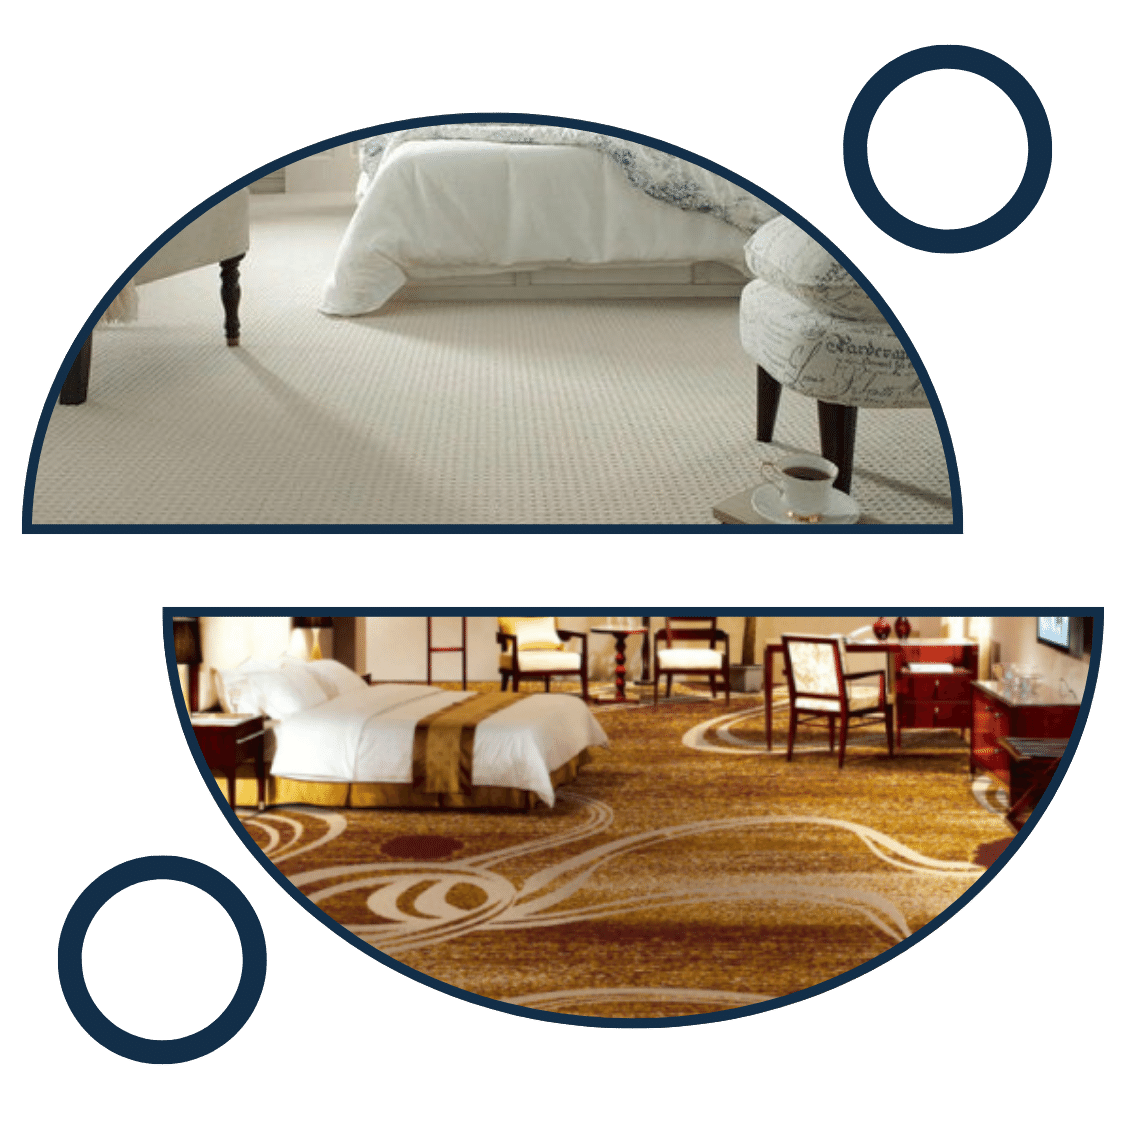 Bedroom carpets in dubai